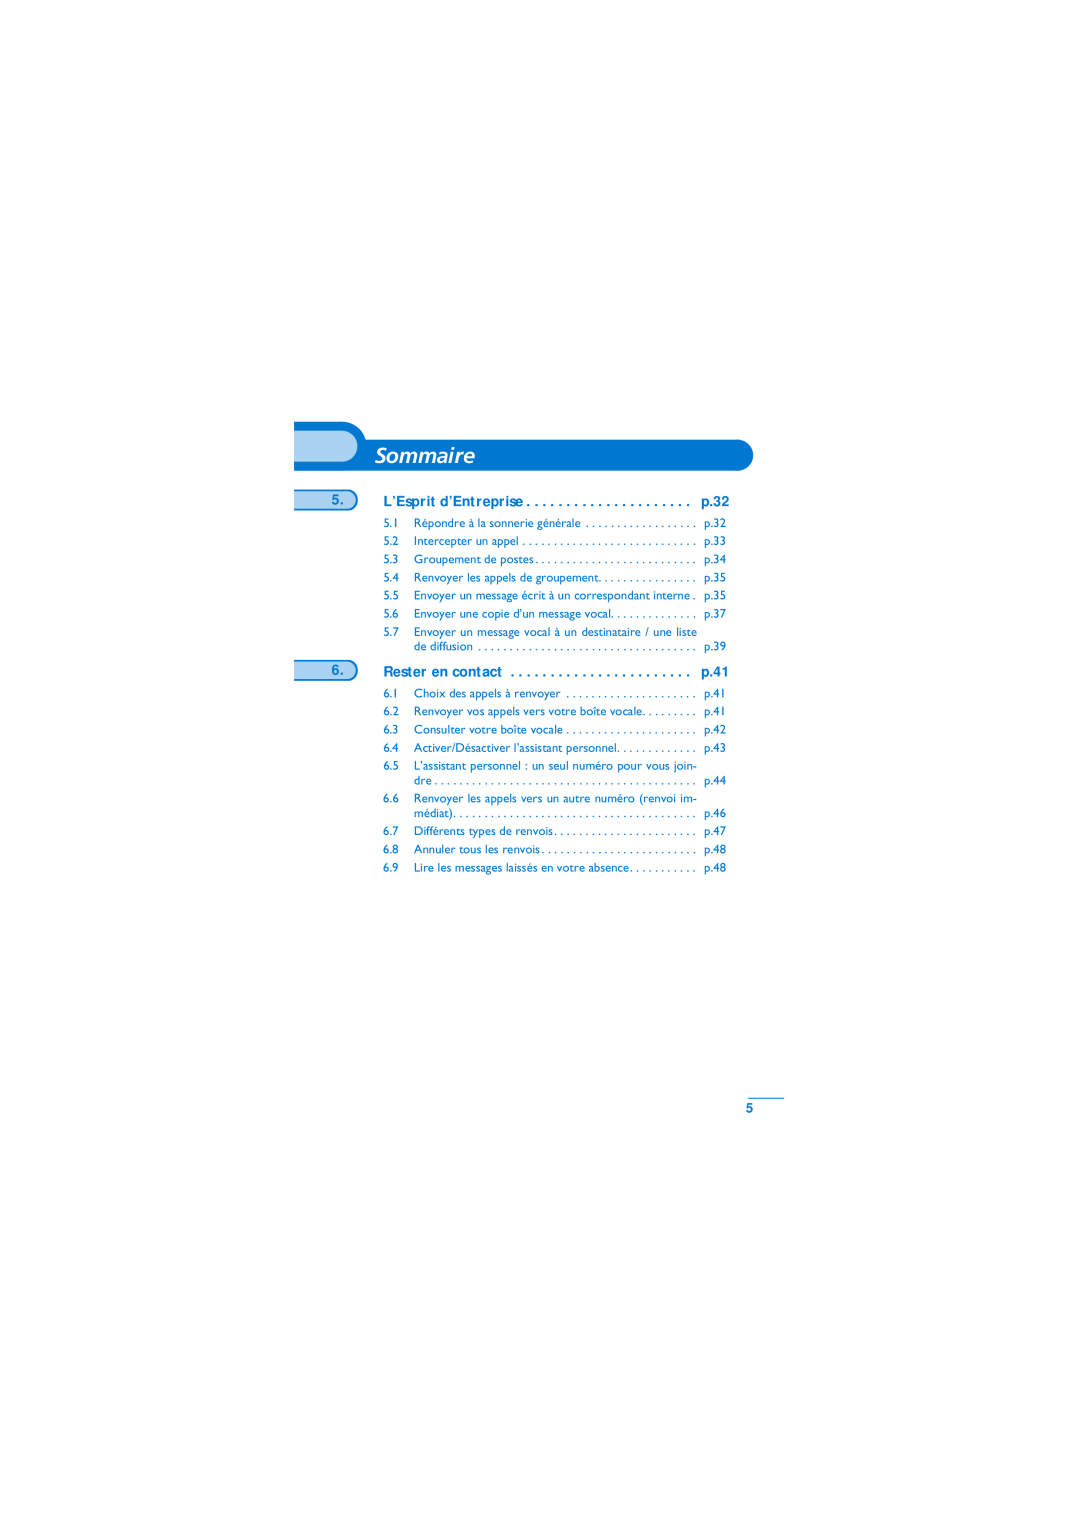 Alcatel-Lucent Mobile Reflexes 100 manual L’Esprit d’Entreprise, Rester en contact, p.32, p.41, Sommaire 